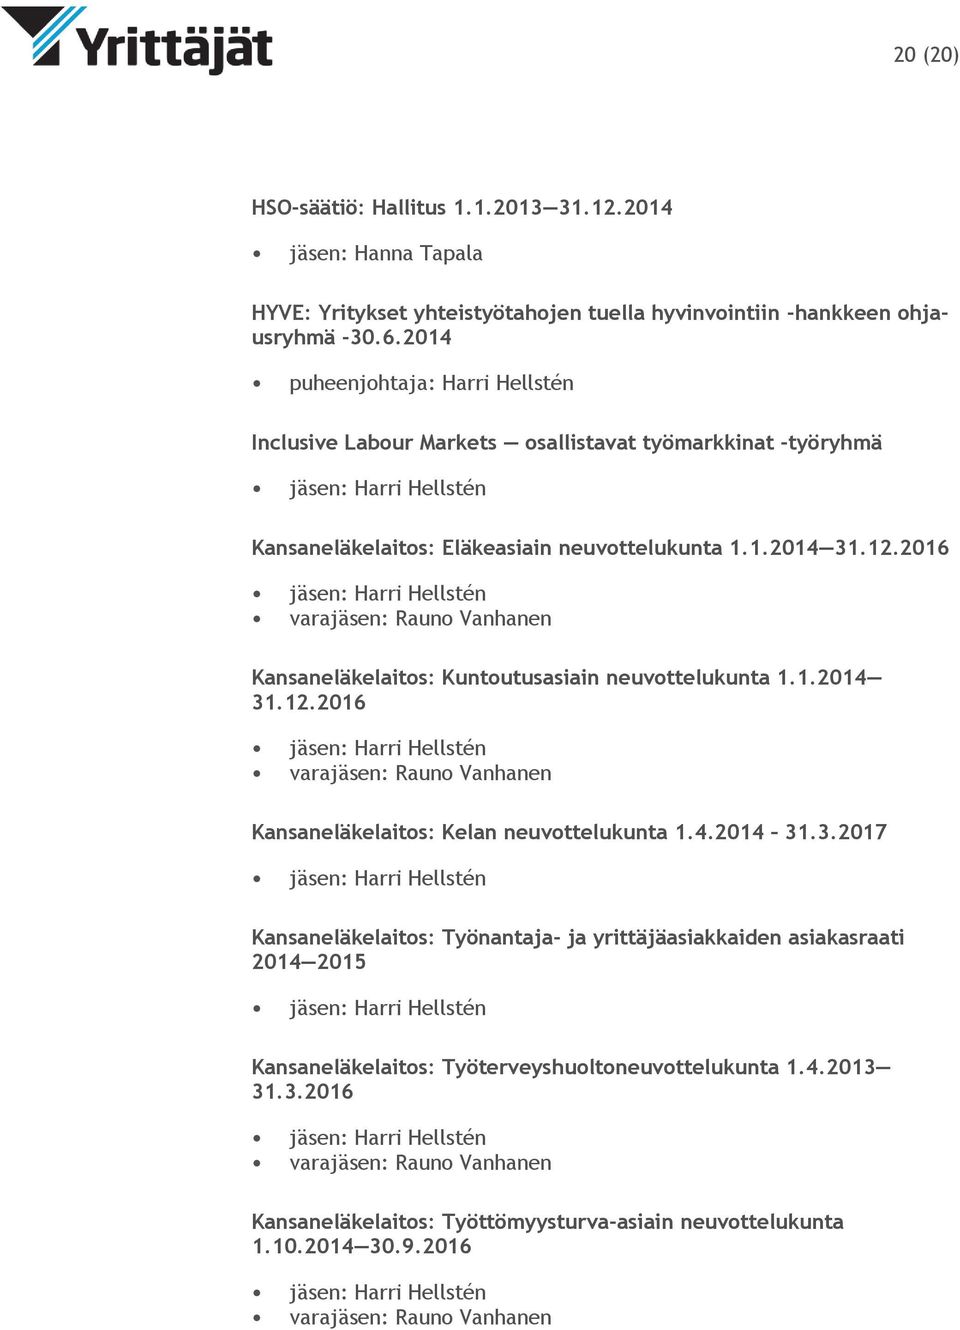 2016 varajäsen: Rauno Vanhanen Kansaneläkelaitos: Kuntoutusasiain neuvottelukunta 1.1.2014 31